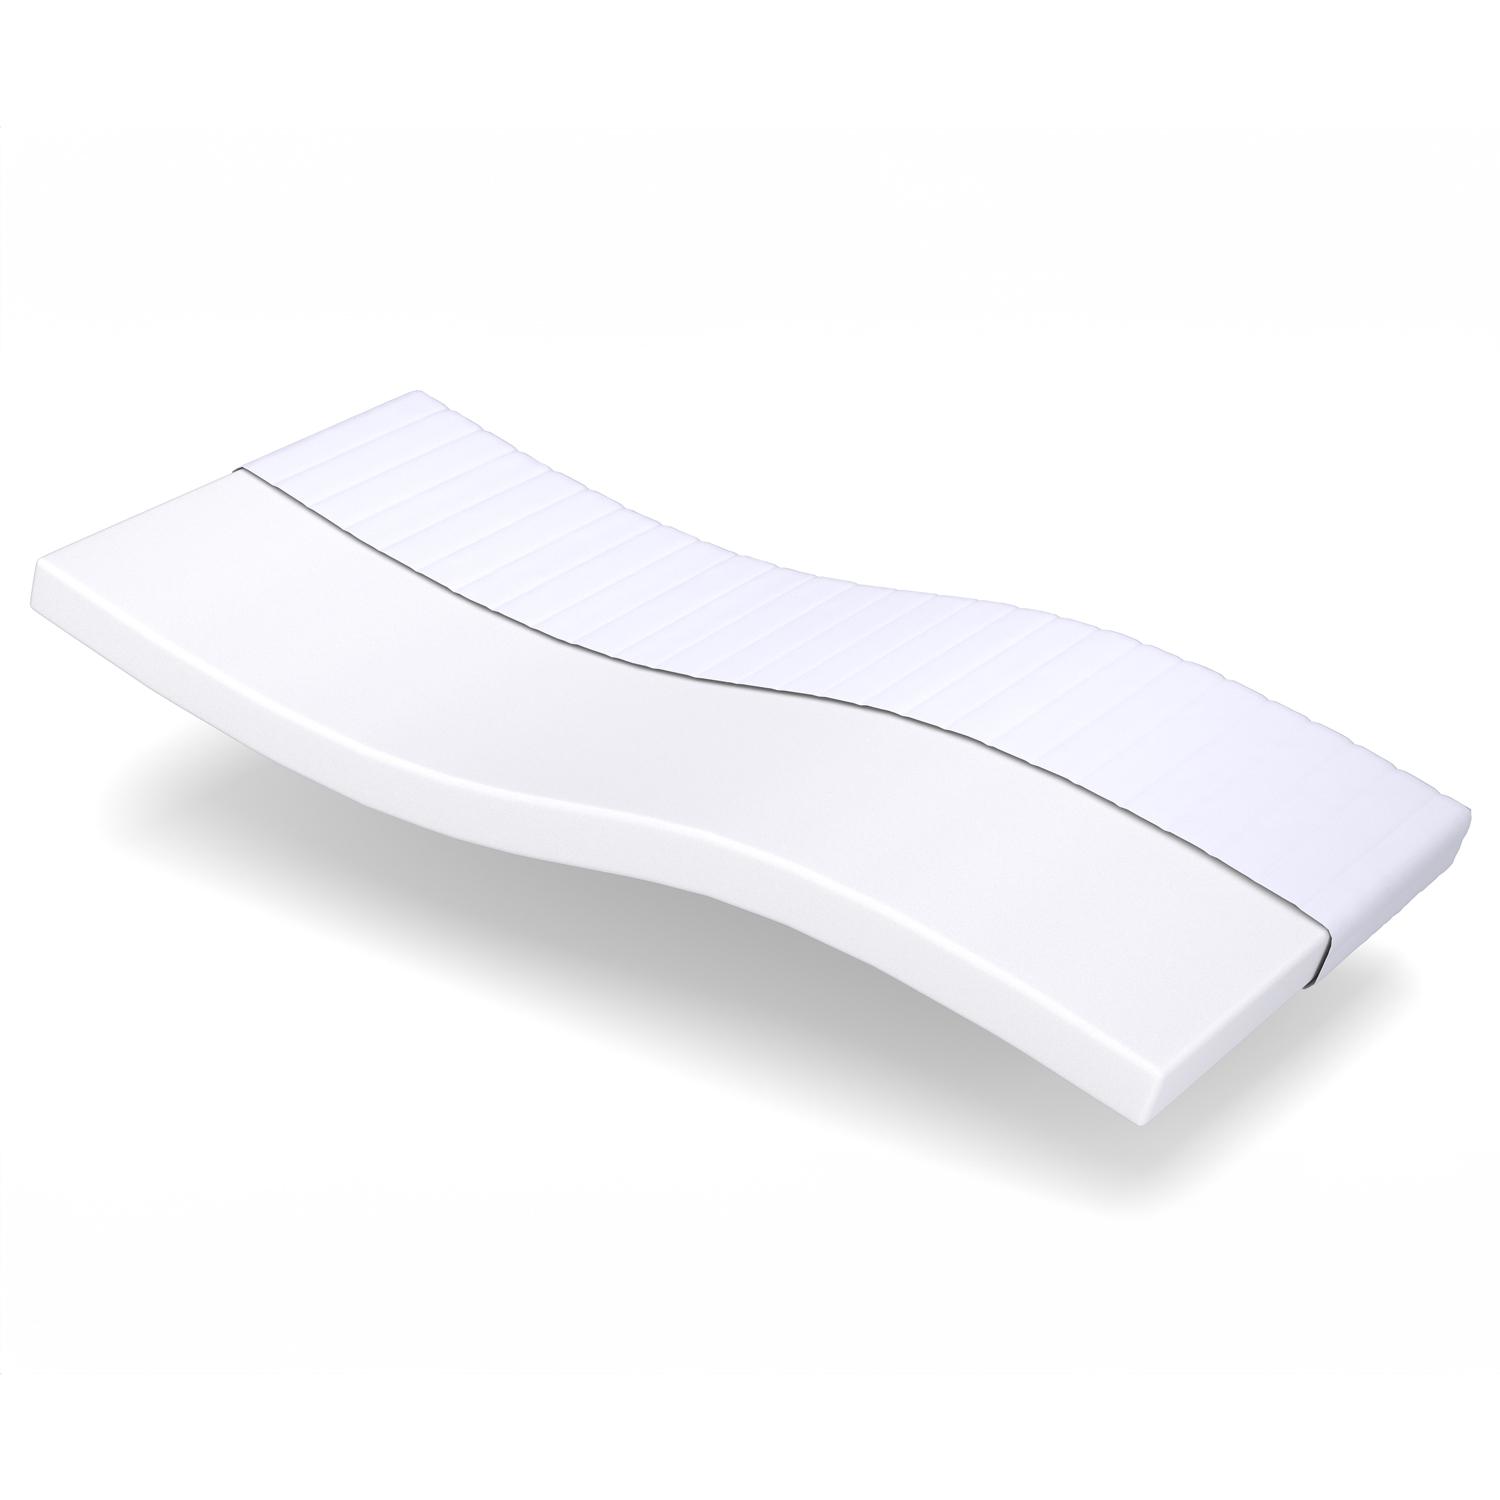 Comfort foam mattress K10 90 x 200 cm, height 10 cm, firmness level H3